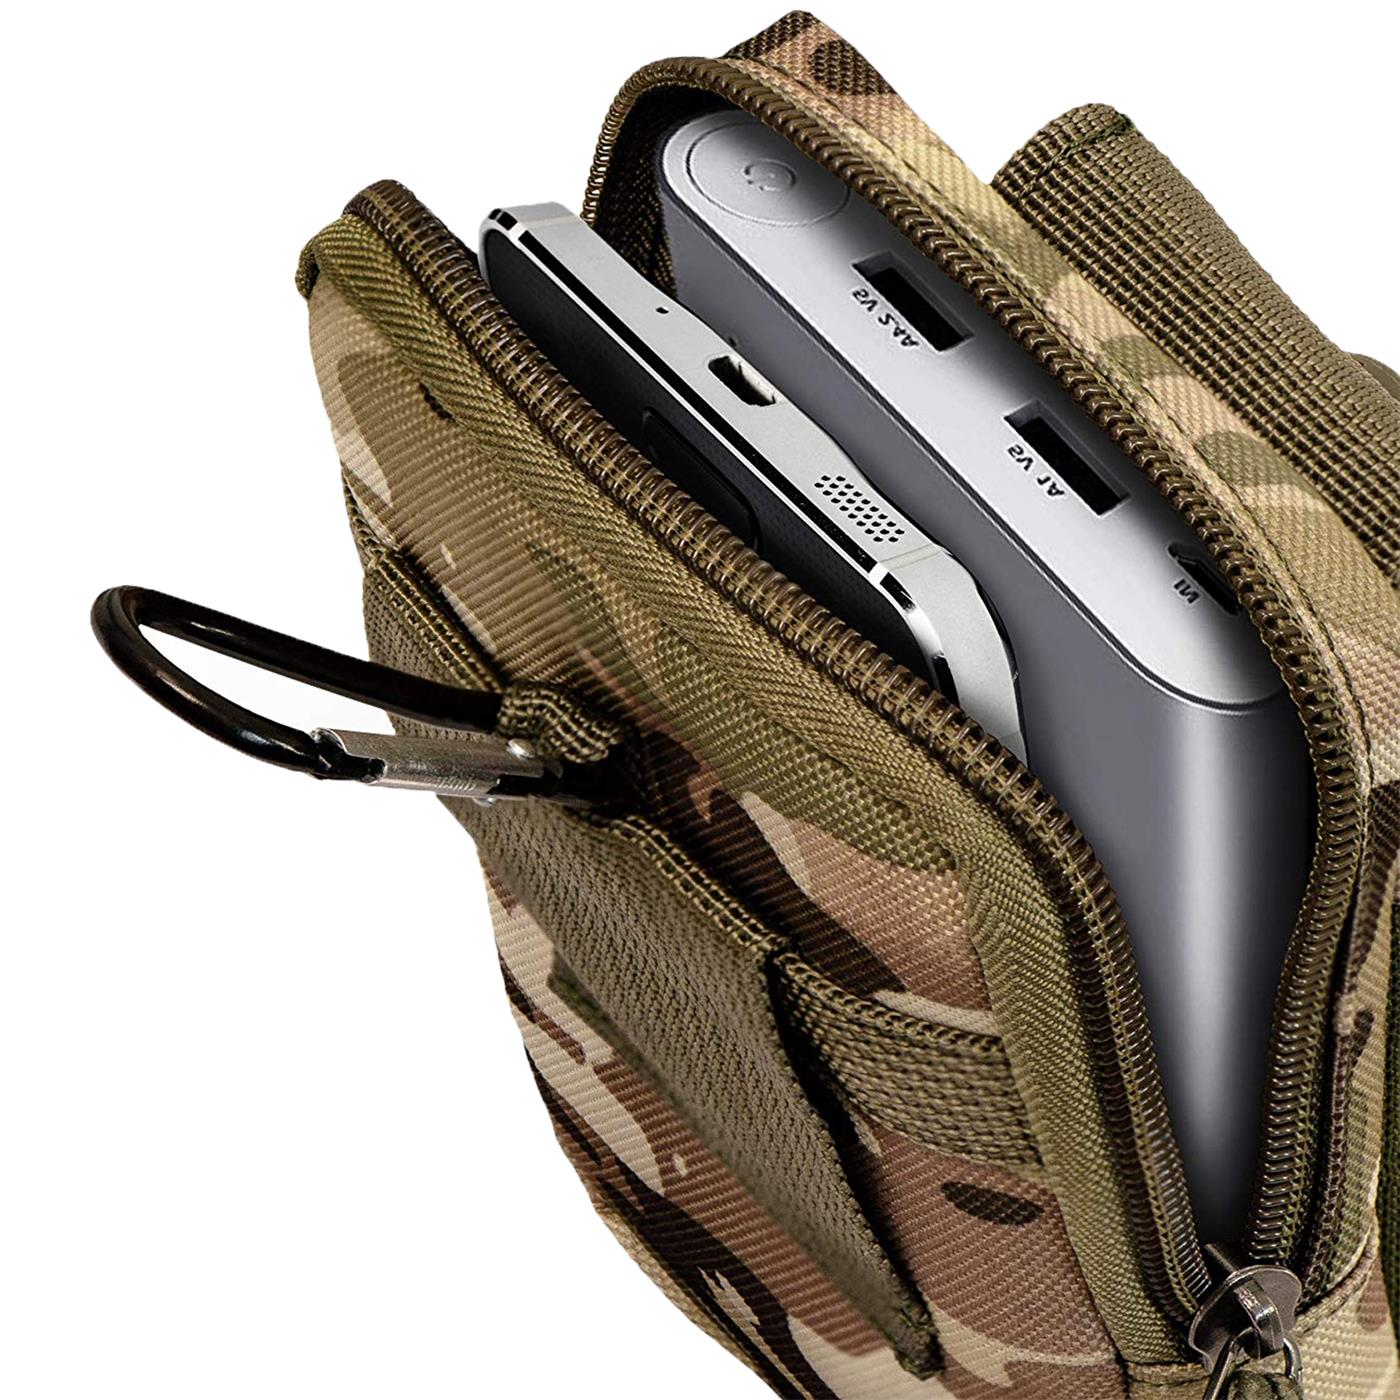 Indexbild 11 - Gürtel Tasche Für Xiaomi Modelle Handy Hülle Schutzhülle Case Clip Etui Nylon